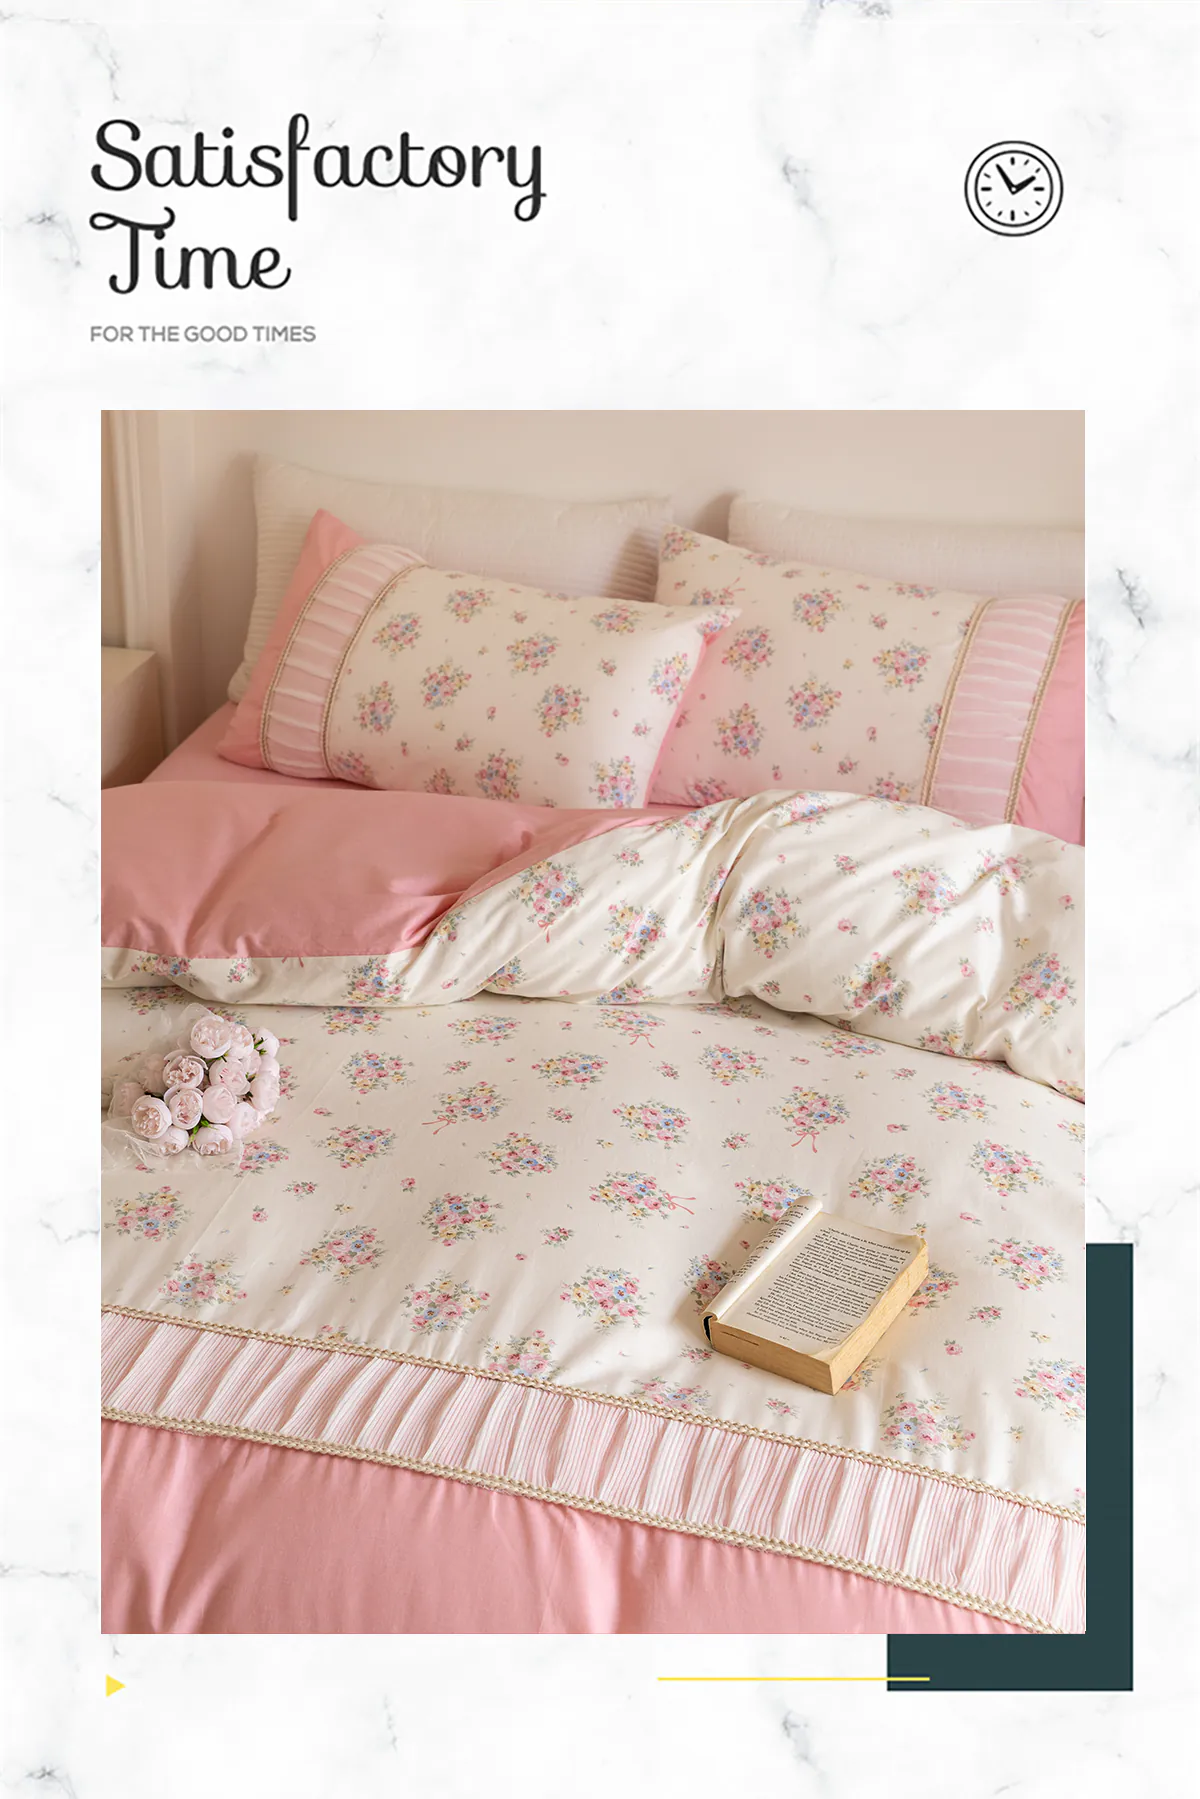 Retro-Princess-Style-100-Cotton-Floral-Duvet-Cover-Bedding-Set11